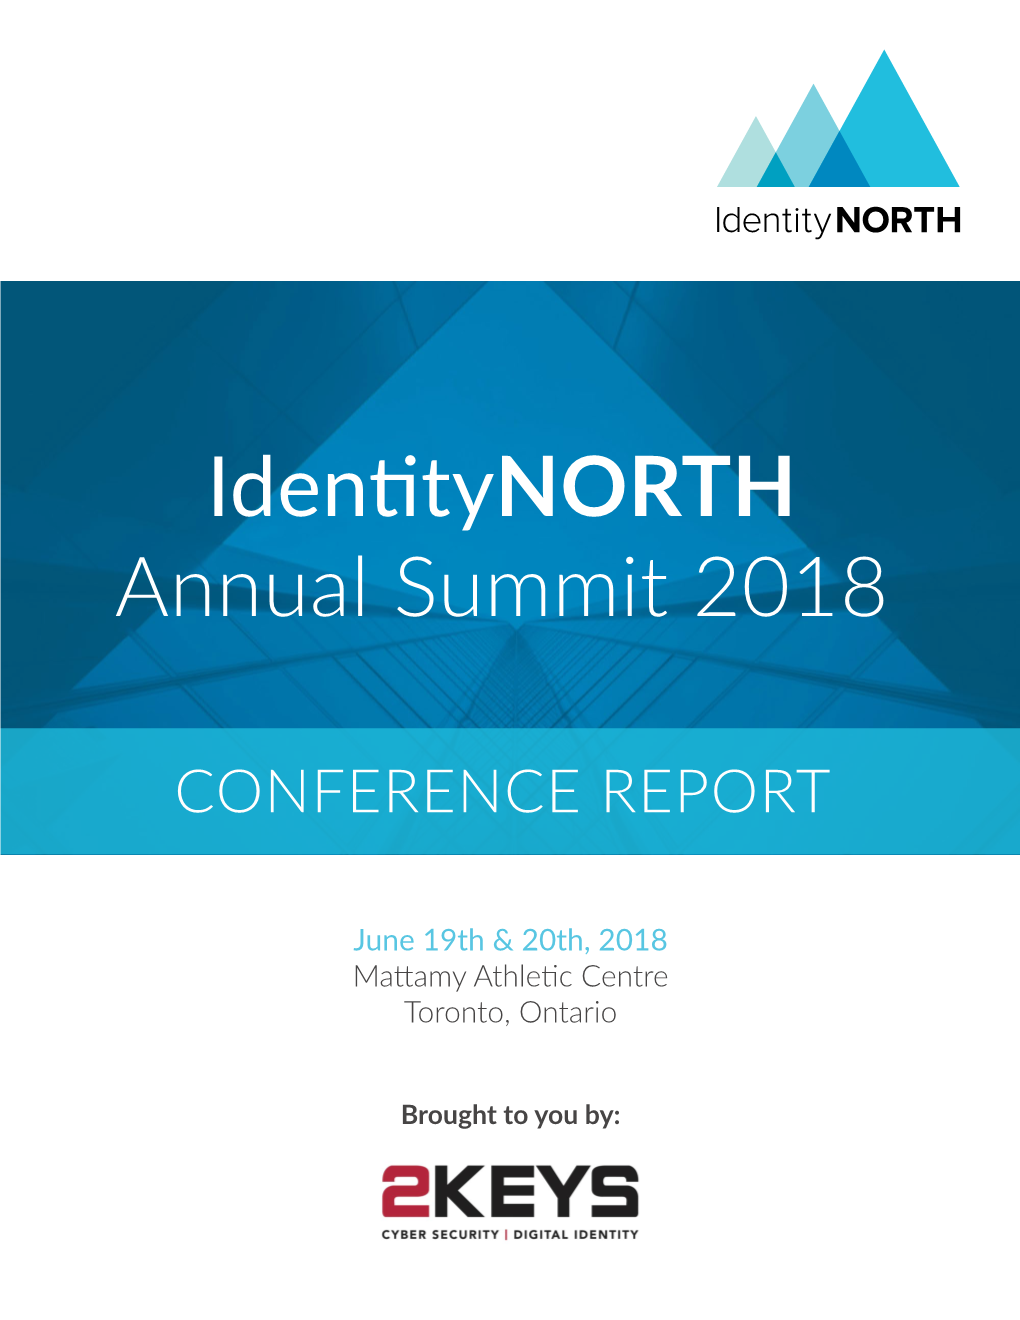 Identitynorth Annual Summit 2018